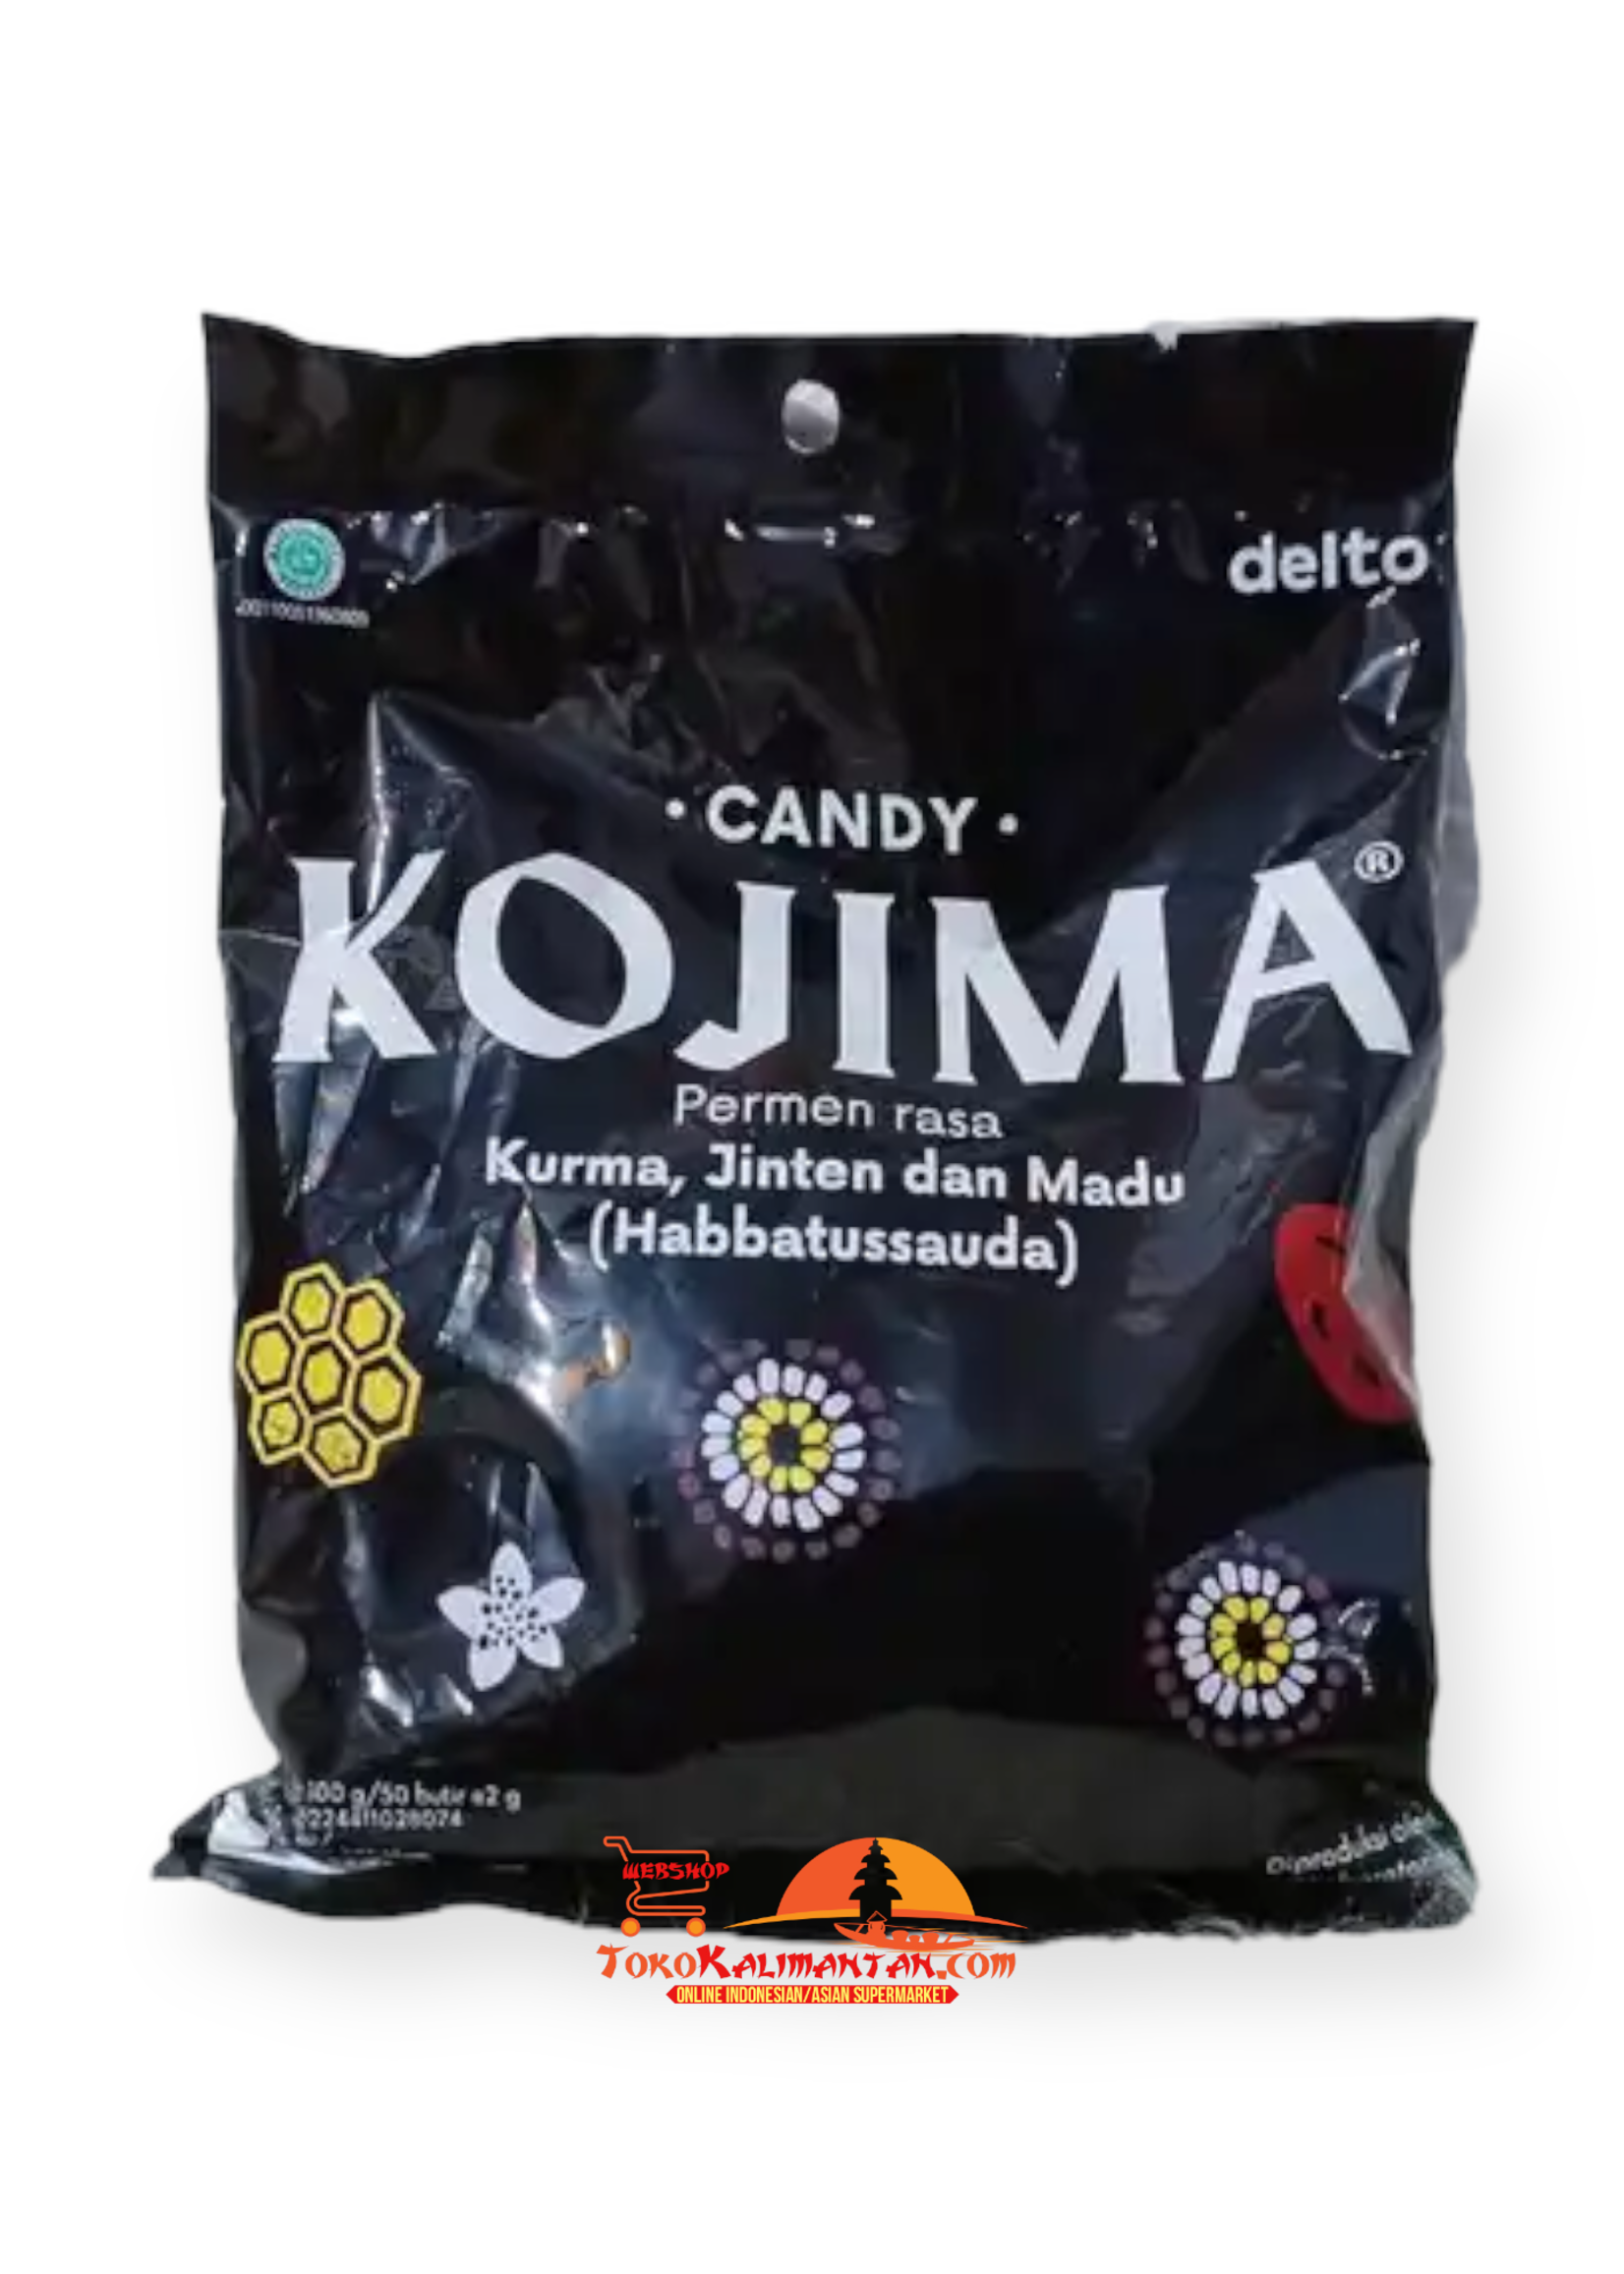 Kojima Kojima - Candy